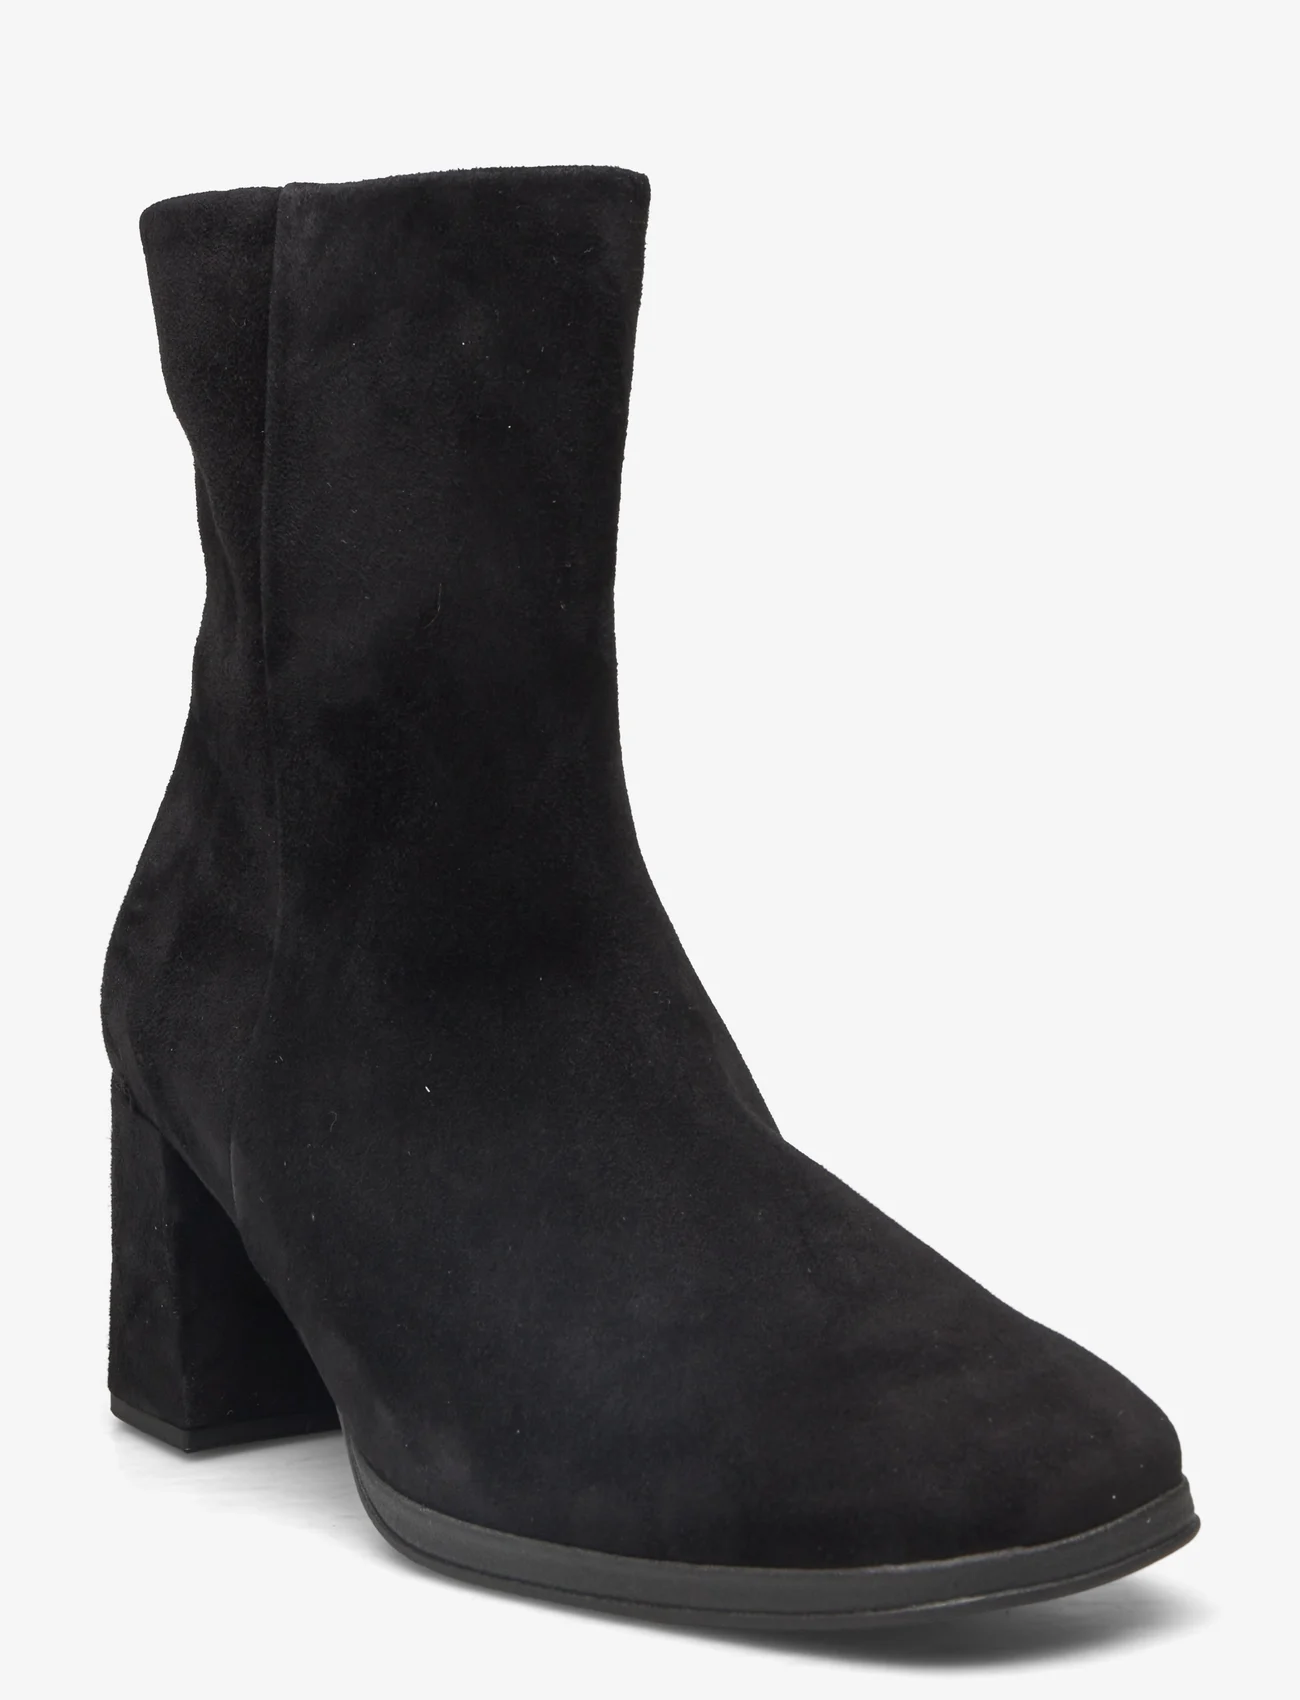 Gabor - Ankle boot - støvletter - black - 0